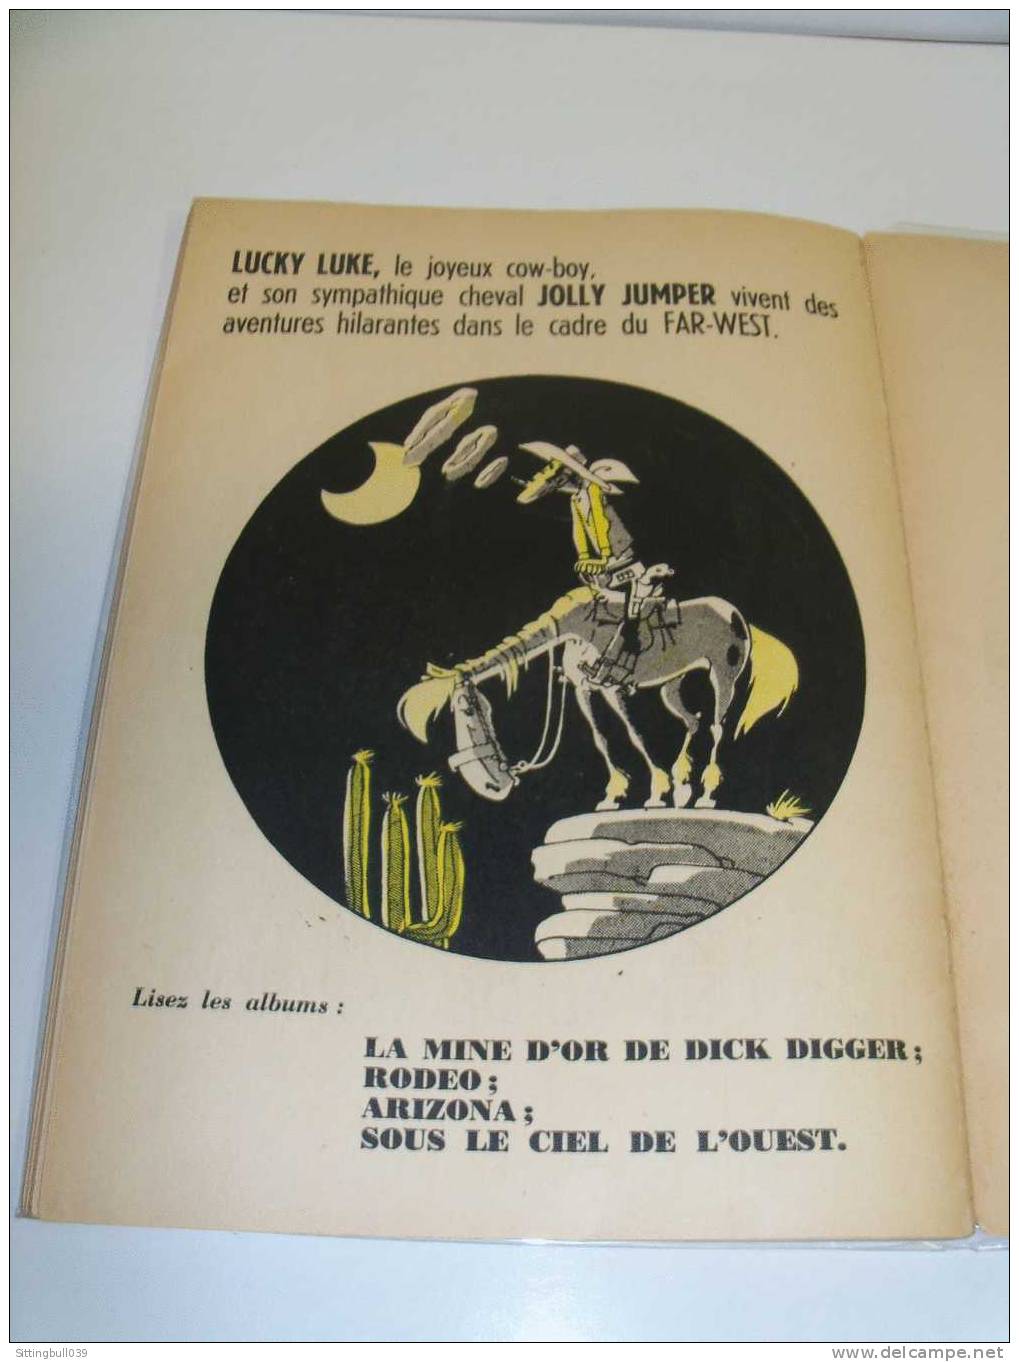 BUCK DANNY. LA REVANCHE DES FILS DU CIEL. CHARLIER / HUBINON. RE 1953. Ed. DUPUIS. Bel état de fraîcheur !.